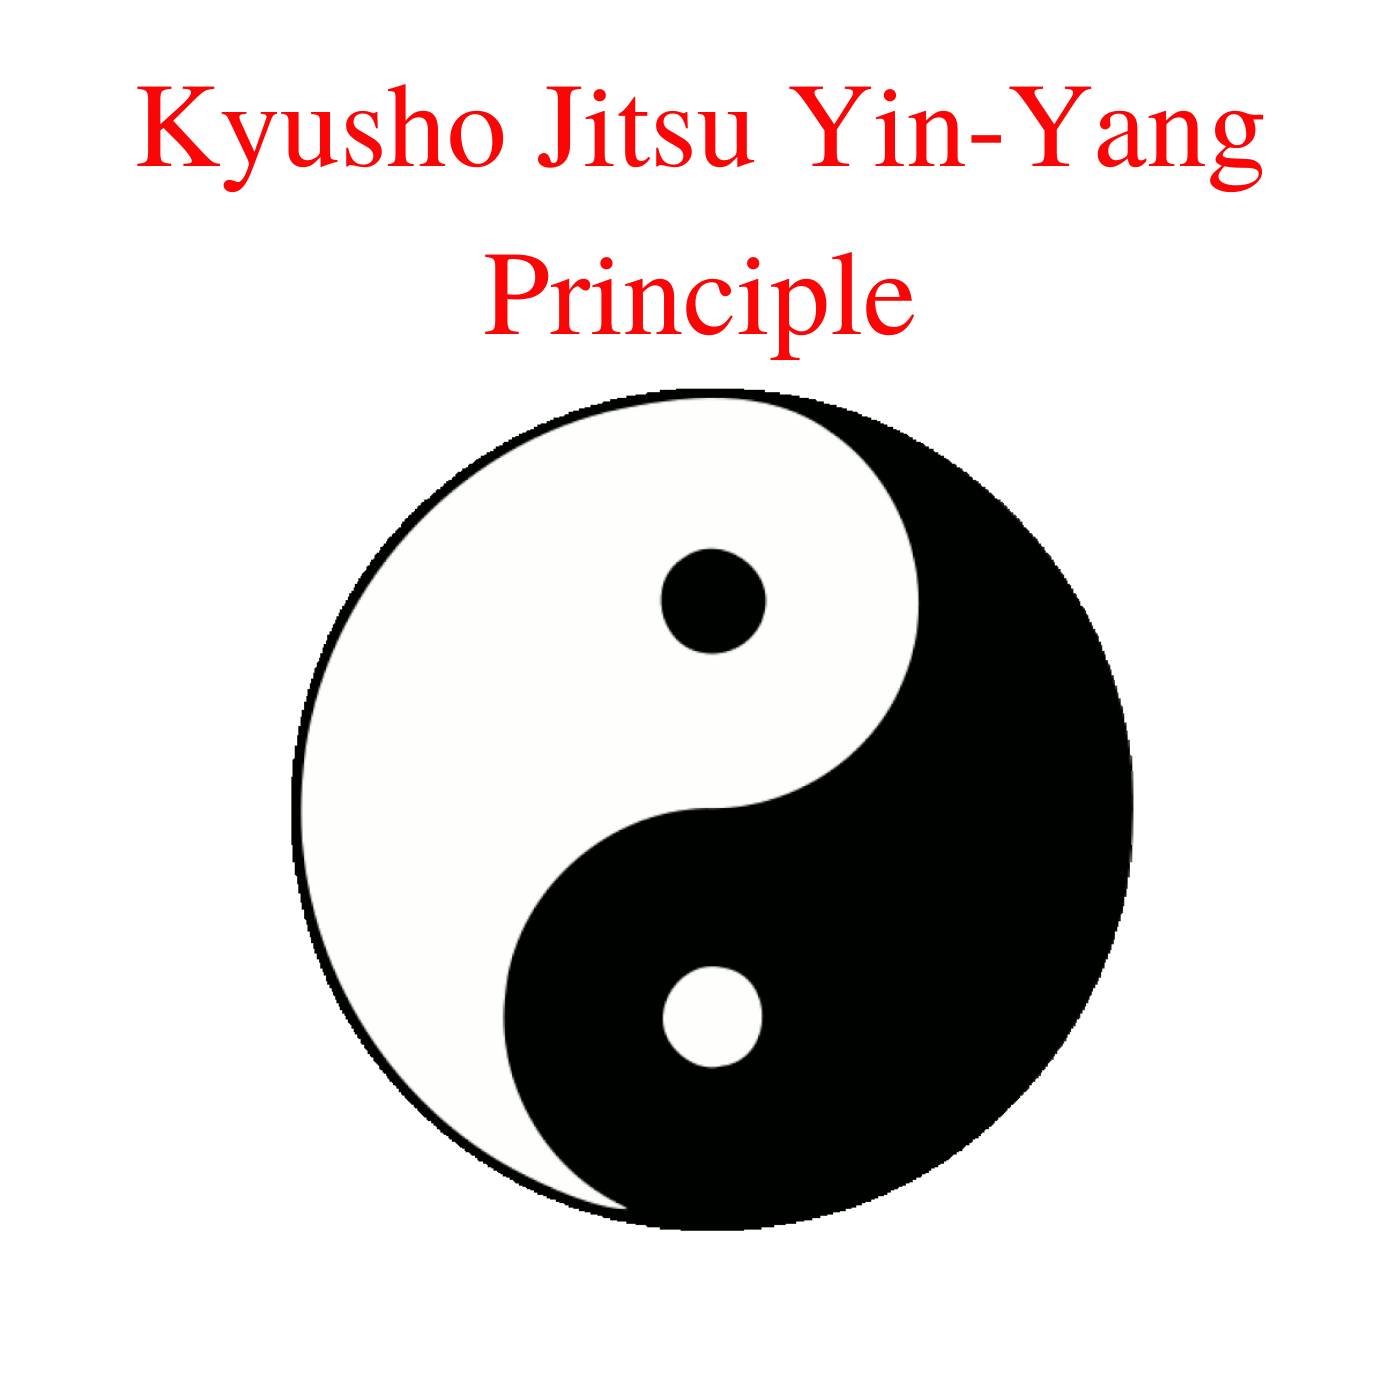 * Kyusho Jitsu Yin-Yang Principle